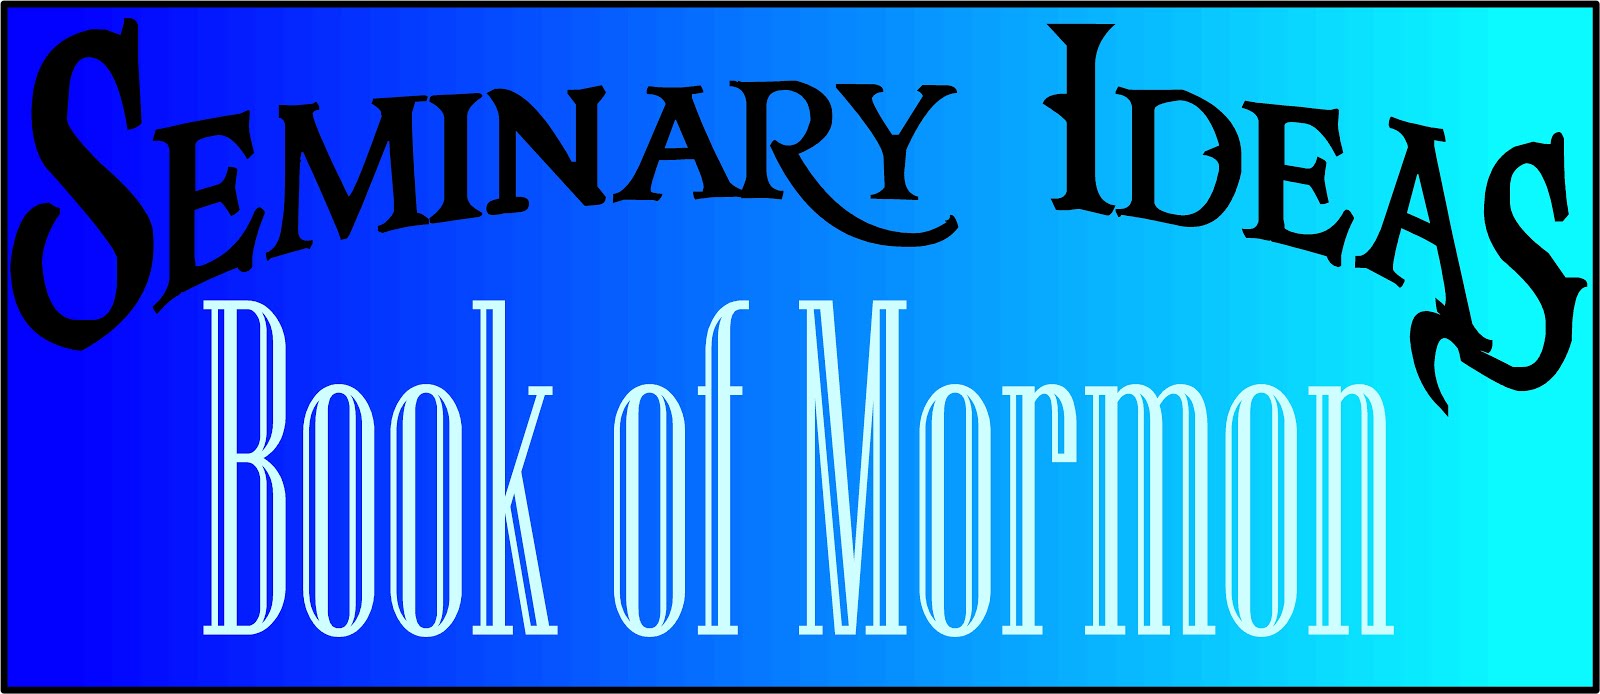 Book of Mormon Seminary Idea